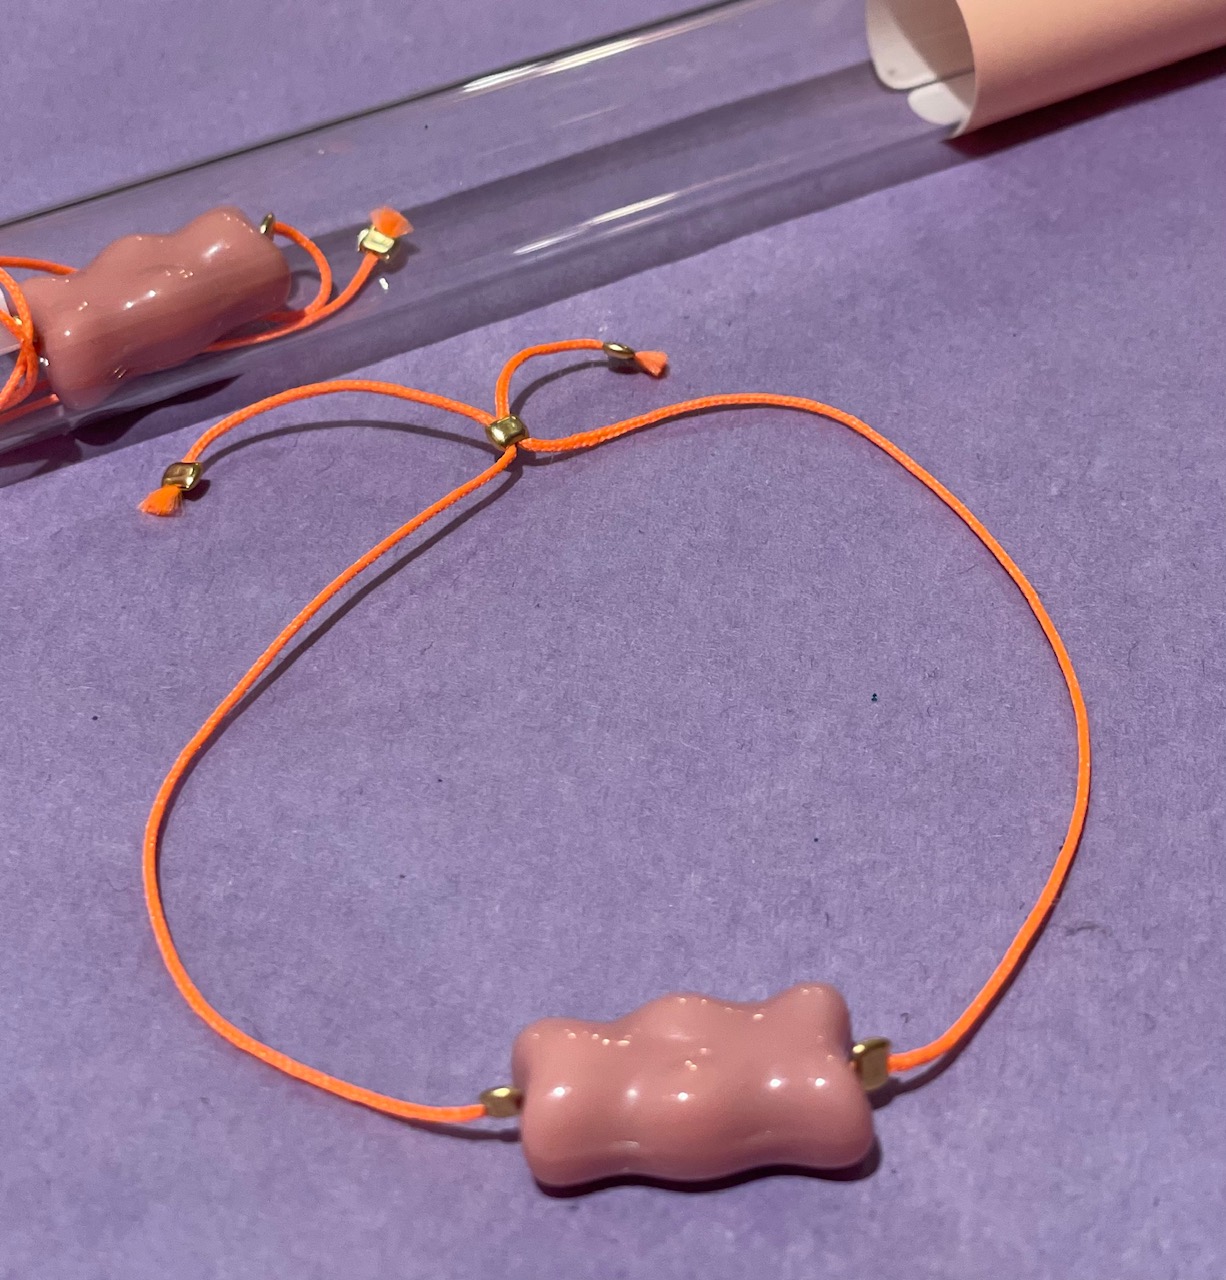 Armband Gummibärchen rosa mit neon orangefarbenen Band, verpackt im Reagenzglas